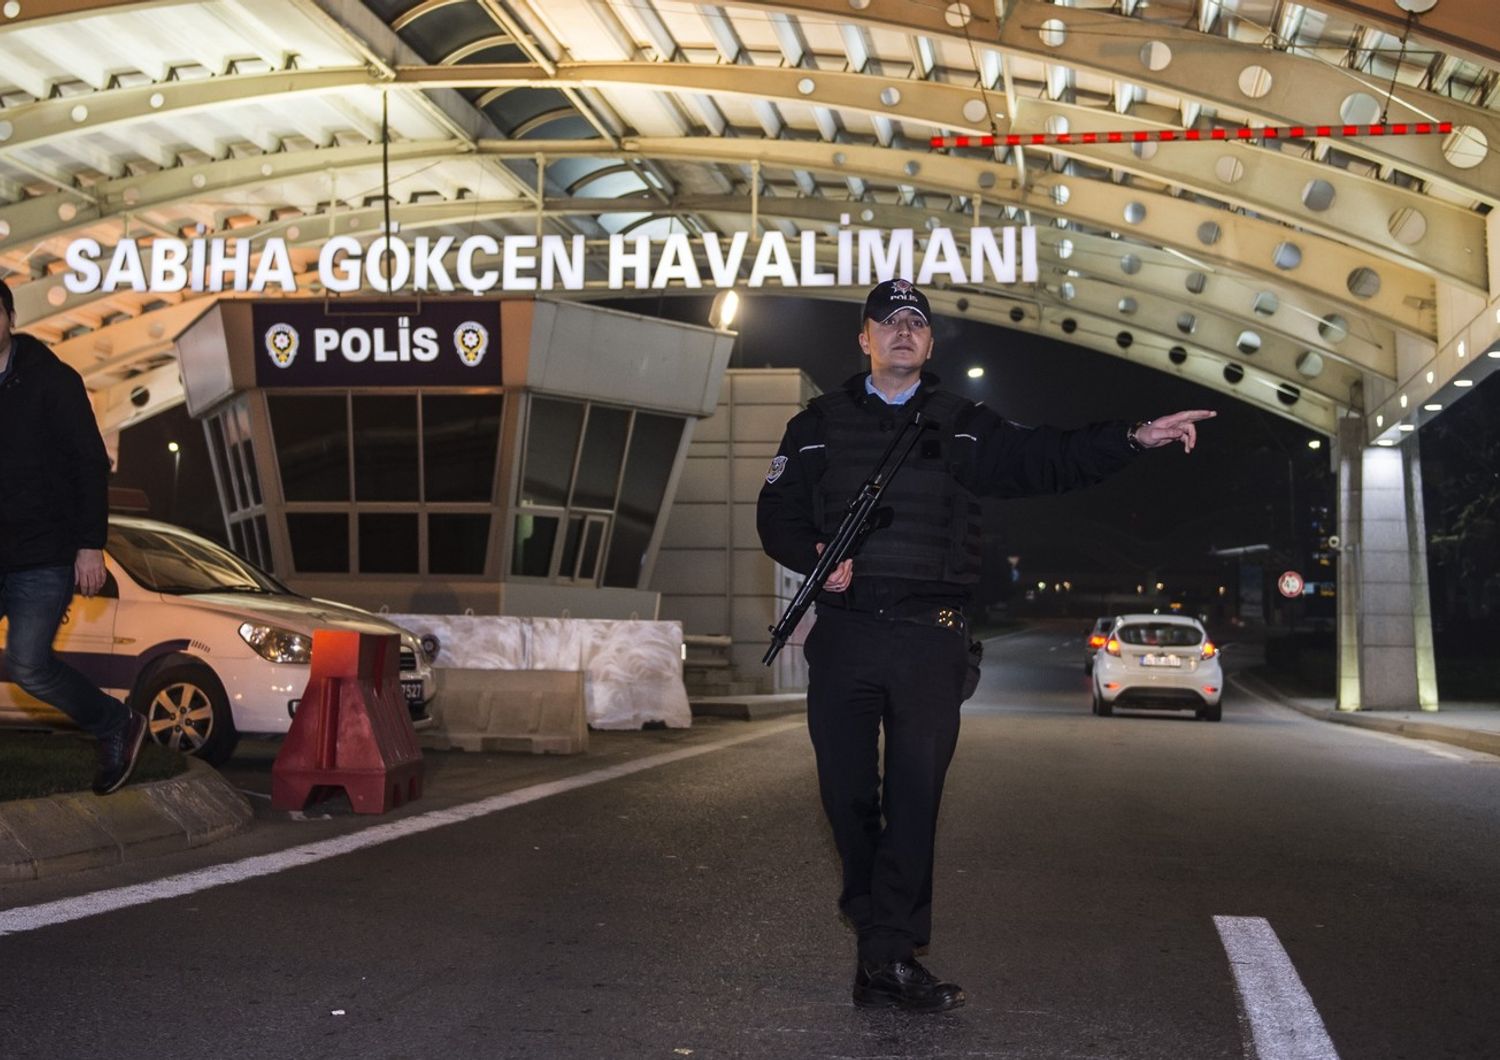 Paura a Istanbul, esplosione in aeroporto - VIDEO